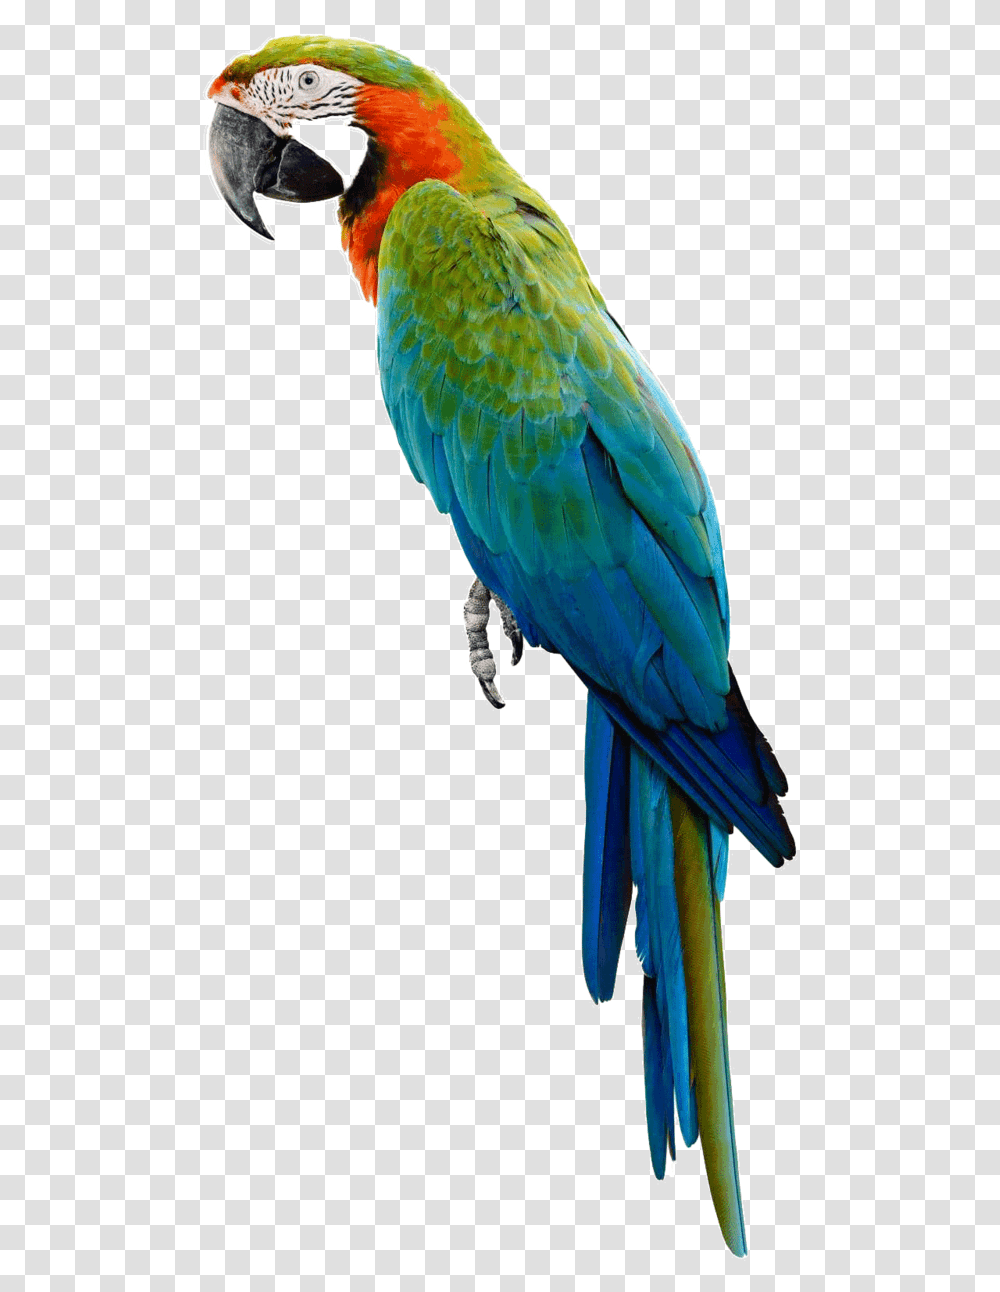 Download Parrot, Bird, Animal, Macaw Transparent Png